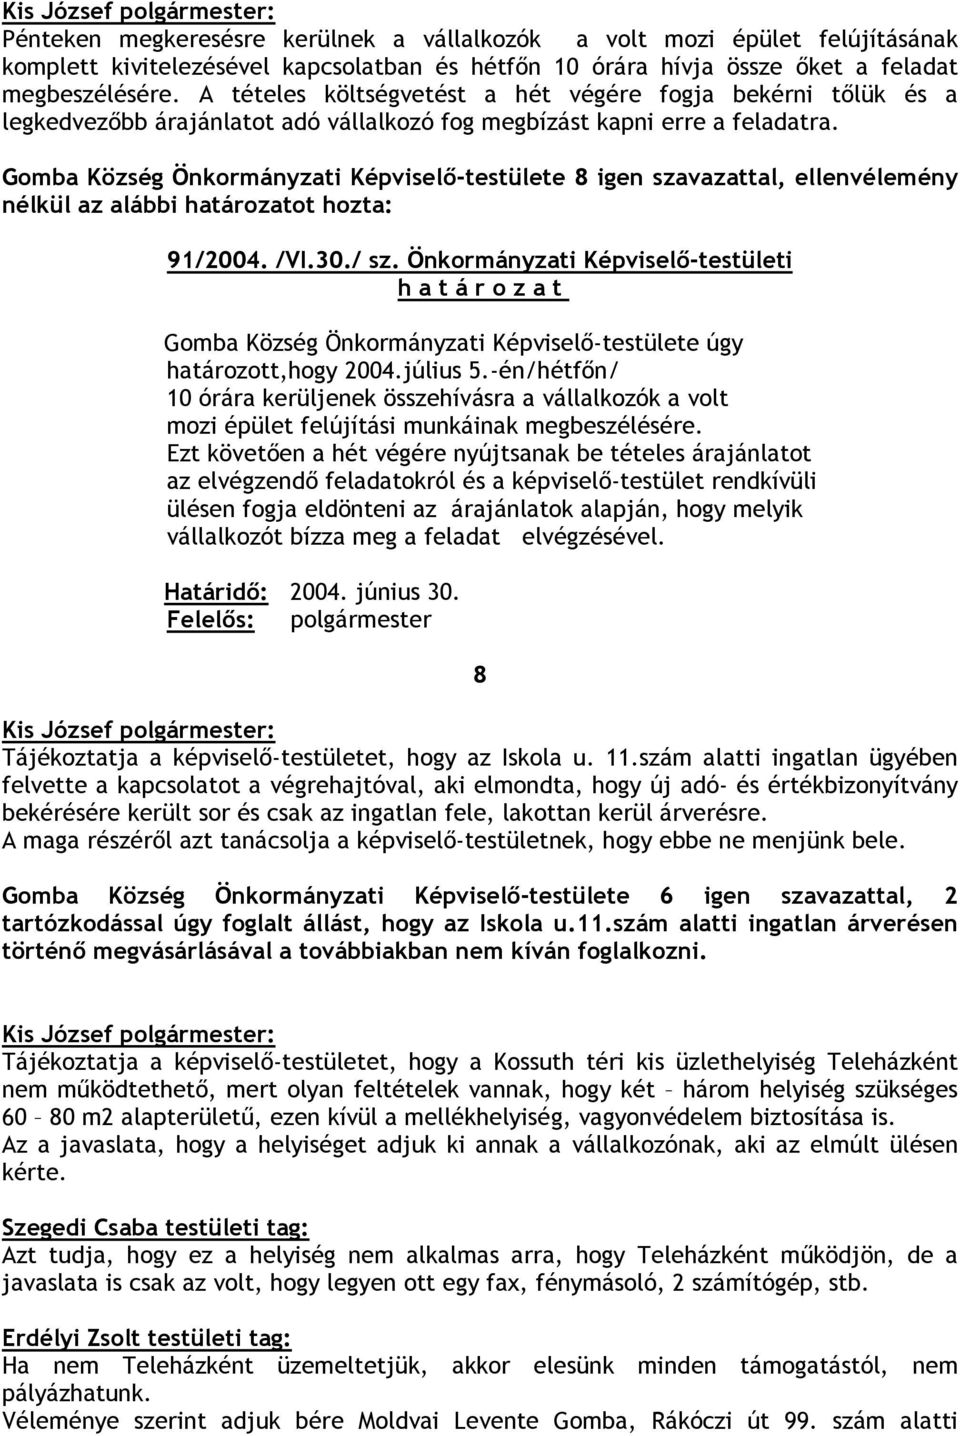 Önkormányzati Képviselı-testületi h a t á r o z a t Gomba Község Önkormányzati Képviselı-testülete úgy határozott,hogy 2004.július 5.